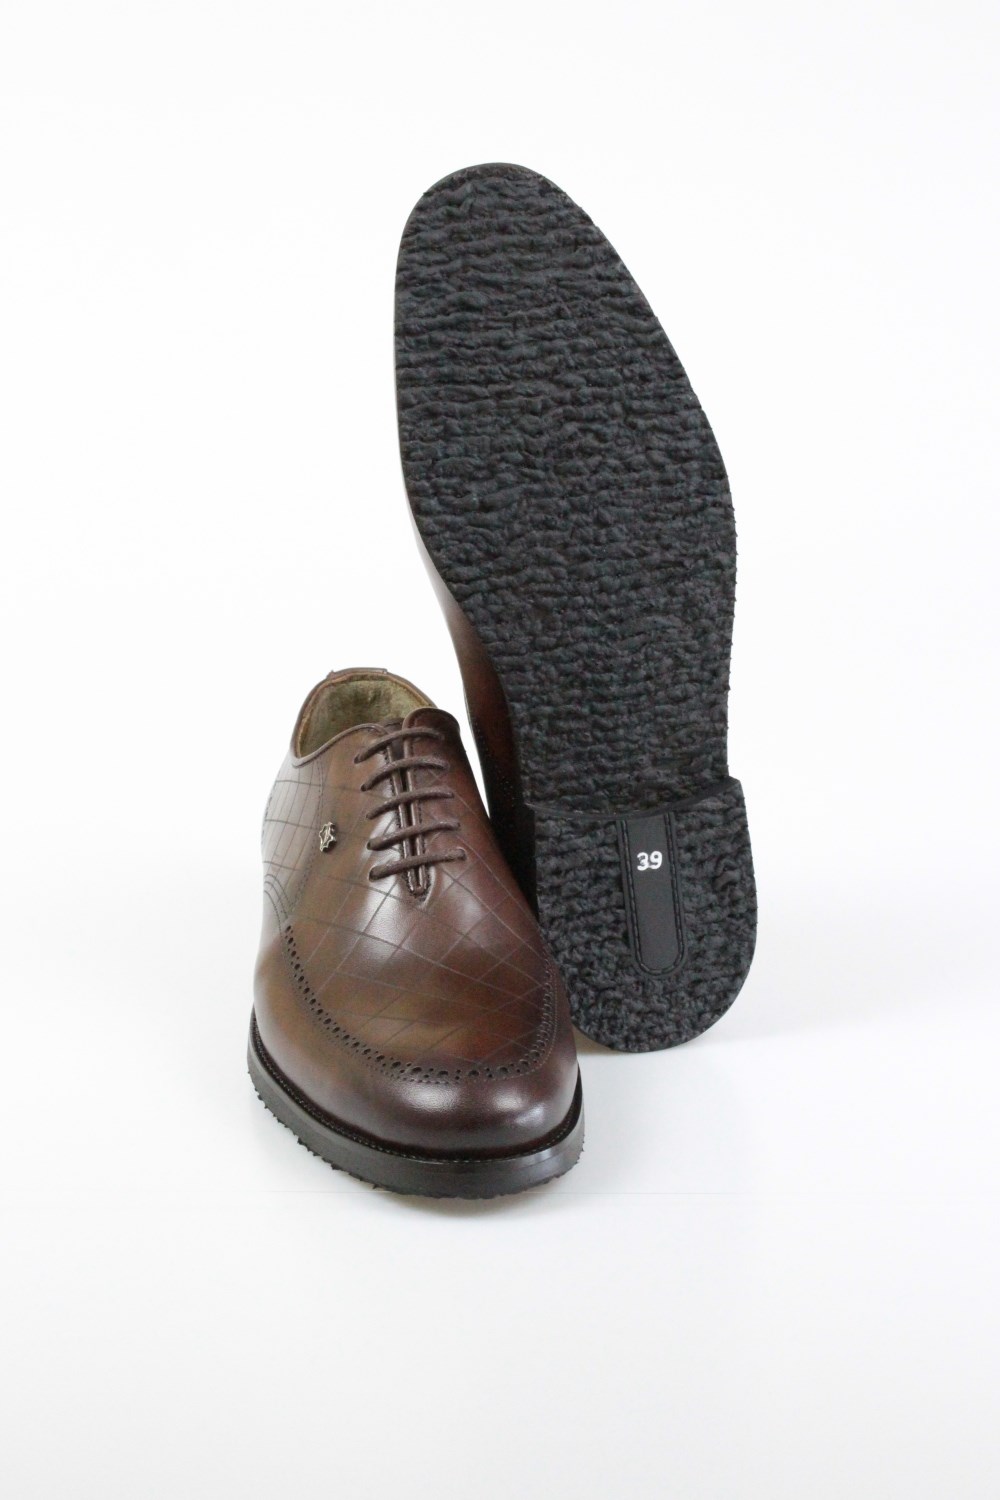 Erkek Klasik Kışlık Ayakkabı Kauçuk Taban Modelleri - Erzen